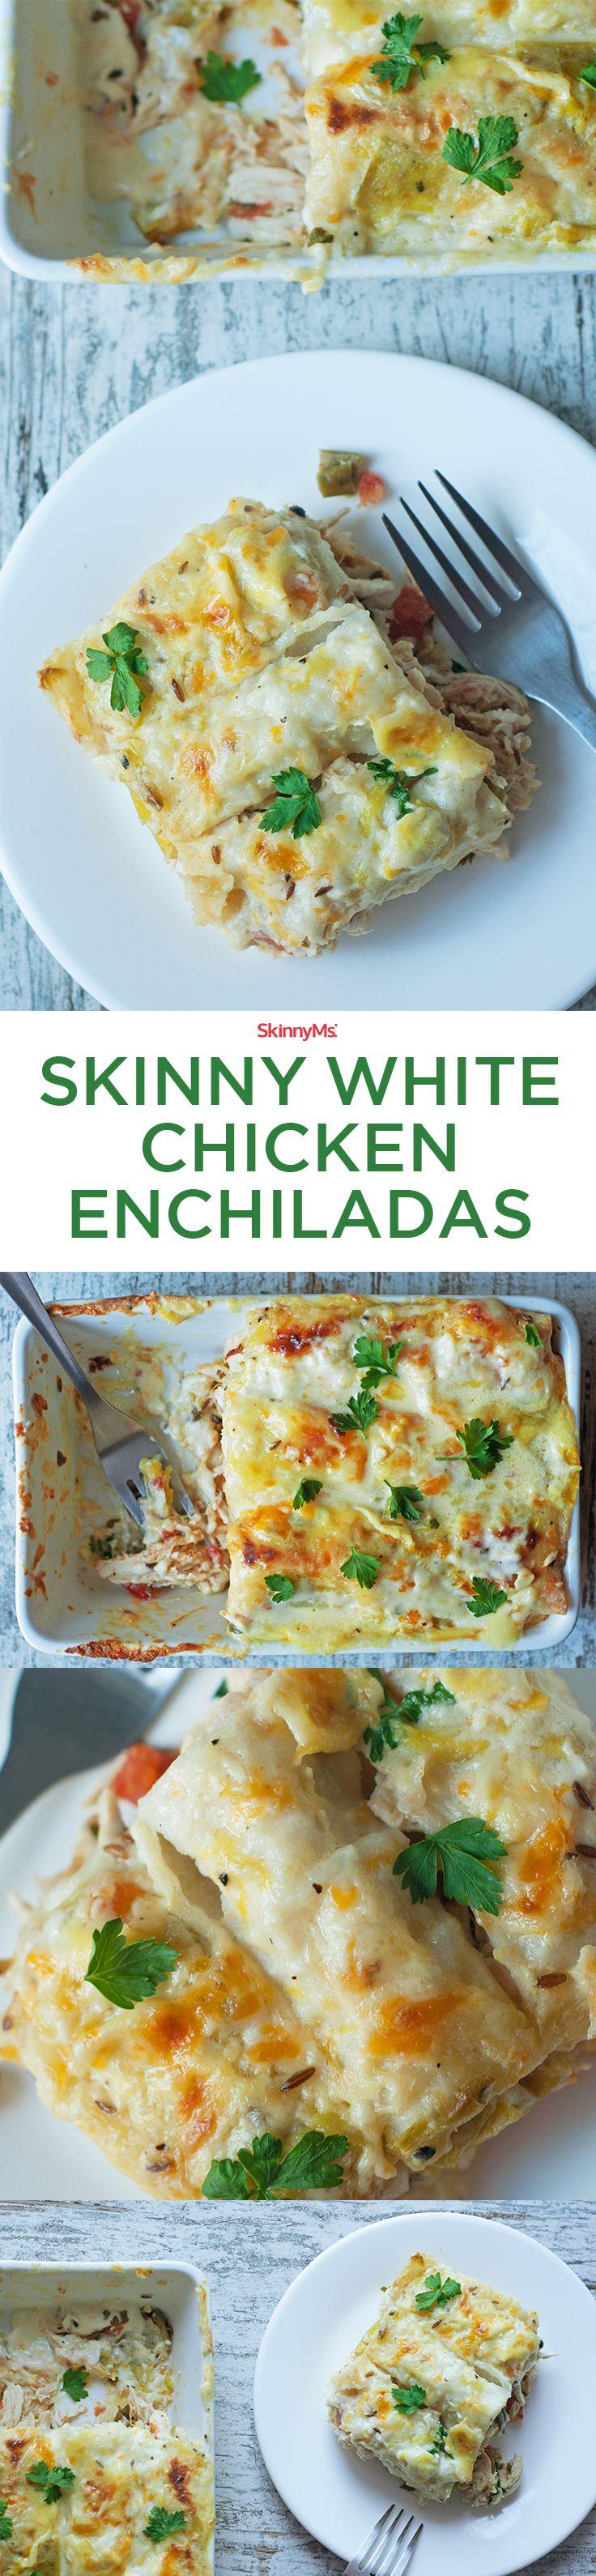 Wedding - Skinny White Chicken Enchiladas